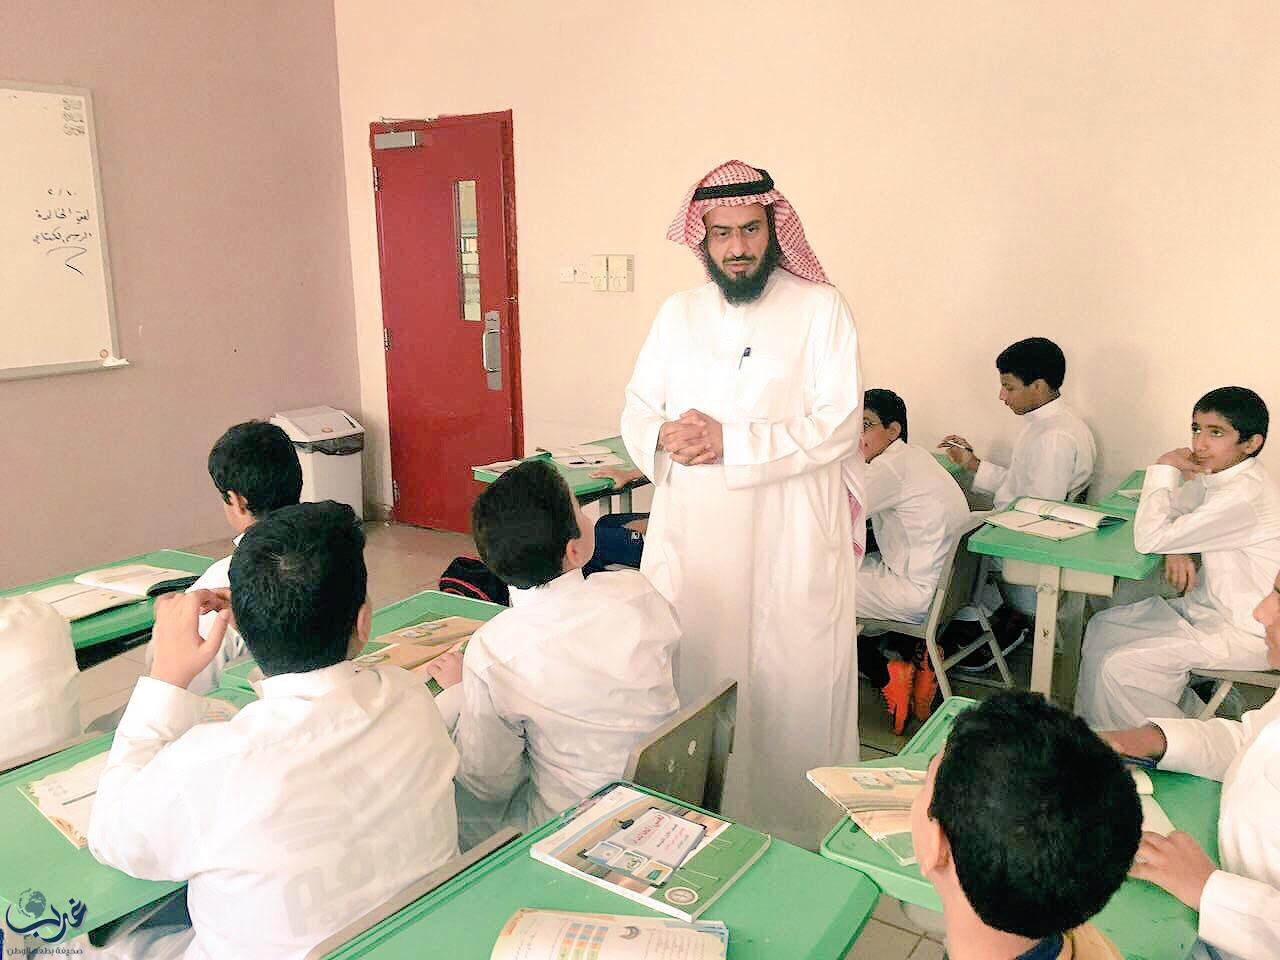 مدير عام التعليم بمنطقة مكة يتفقد سير العمل بمدارس مكة ويشيد بالانضباط المدرسي